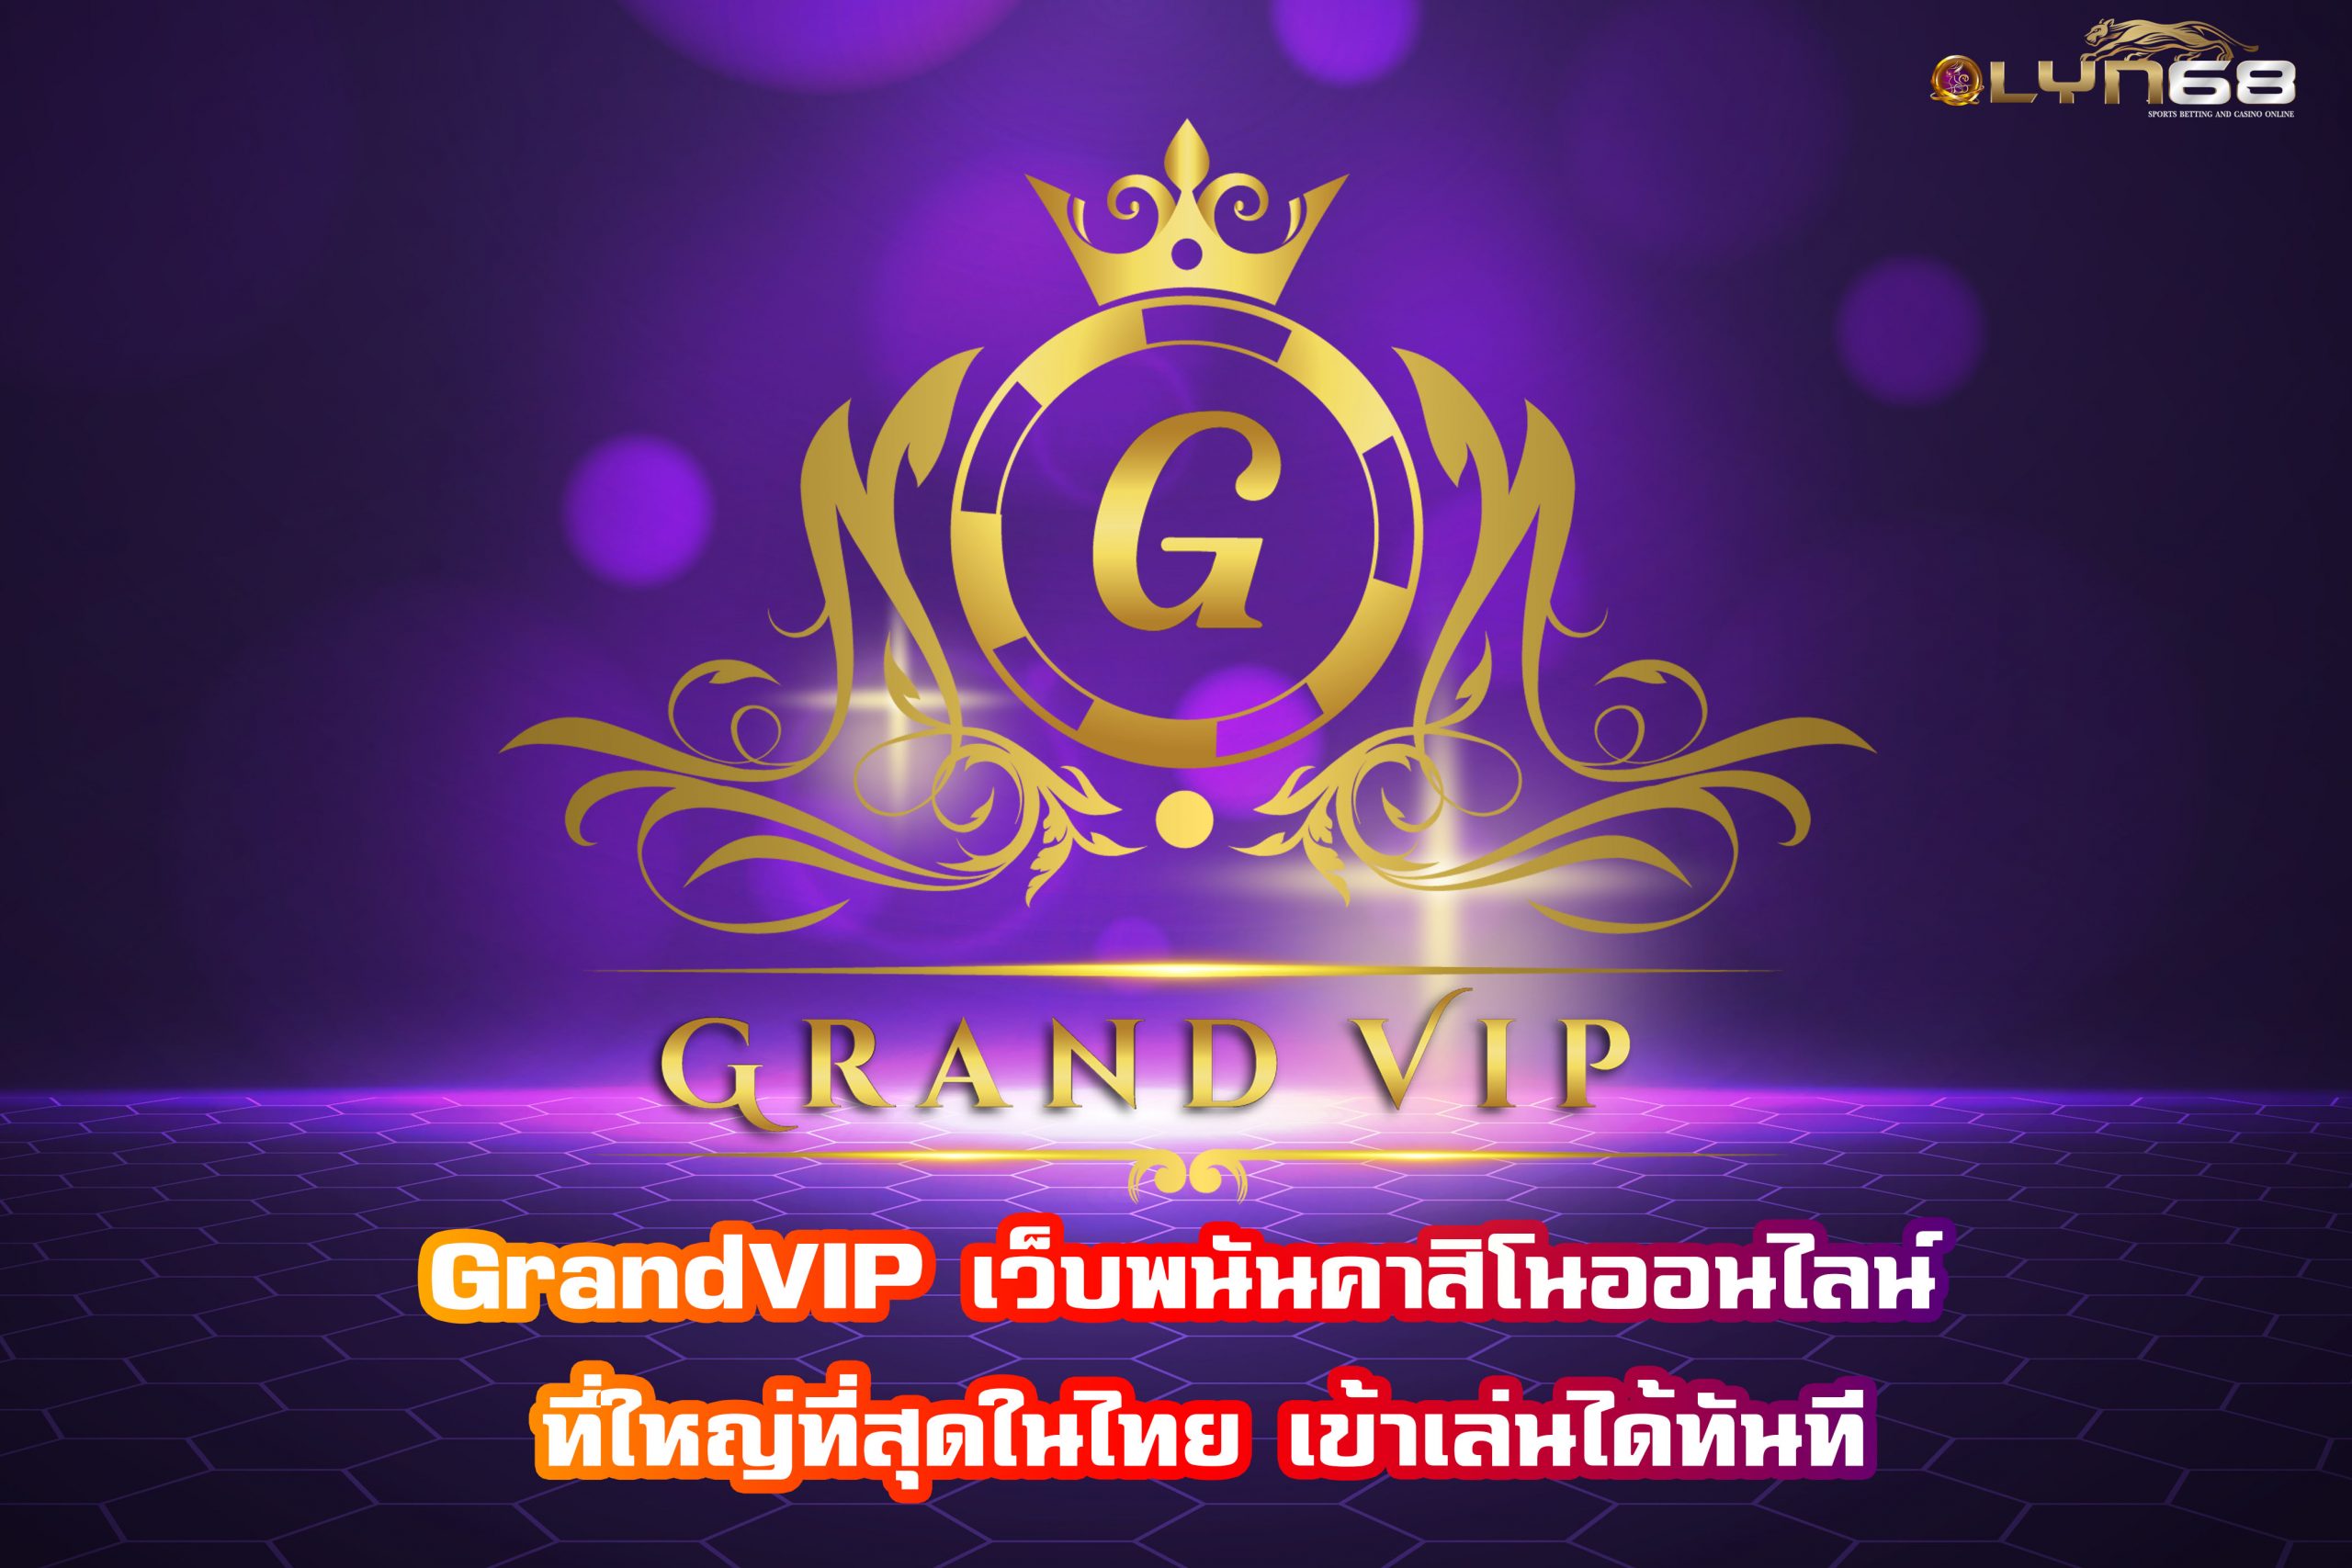 GrandVIP เว็บพนันคาสิโนออนไลน์ ที่ใหญ่ที่สุดในไทย เข้าเล่นได้ทันที